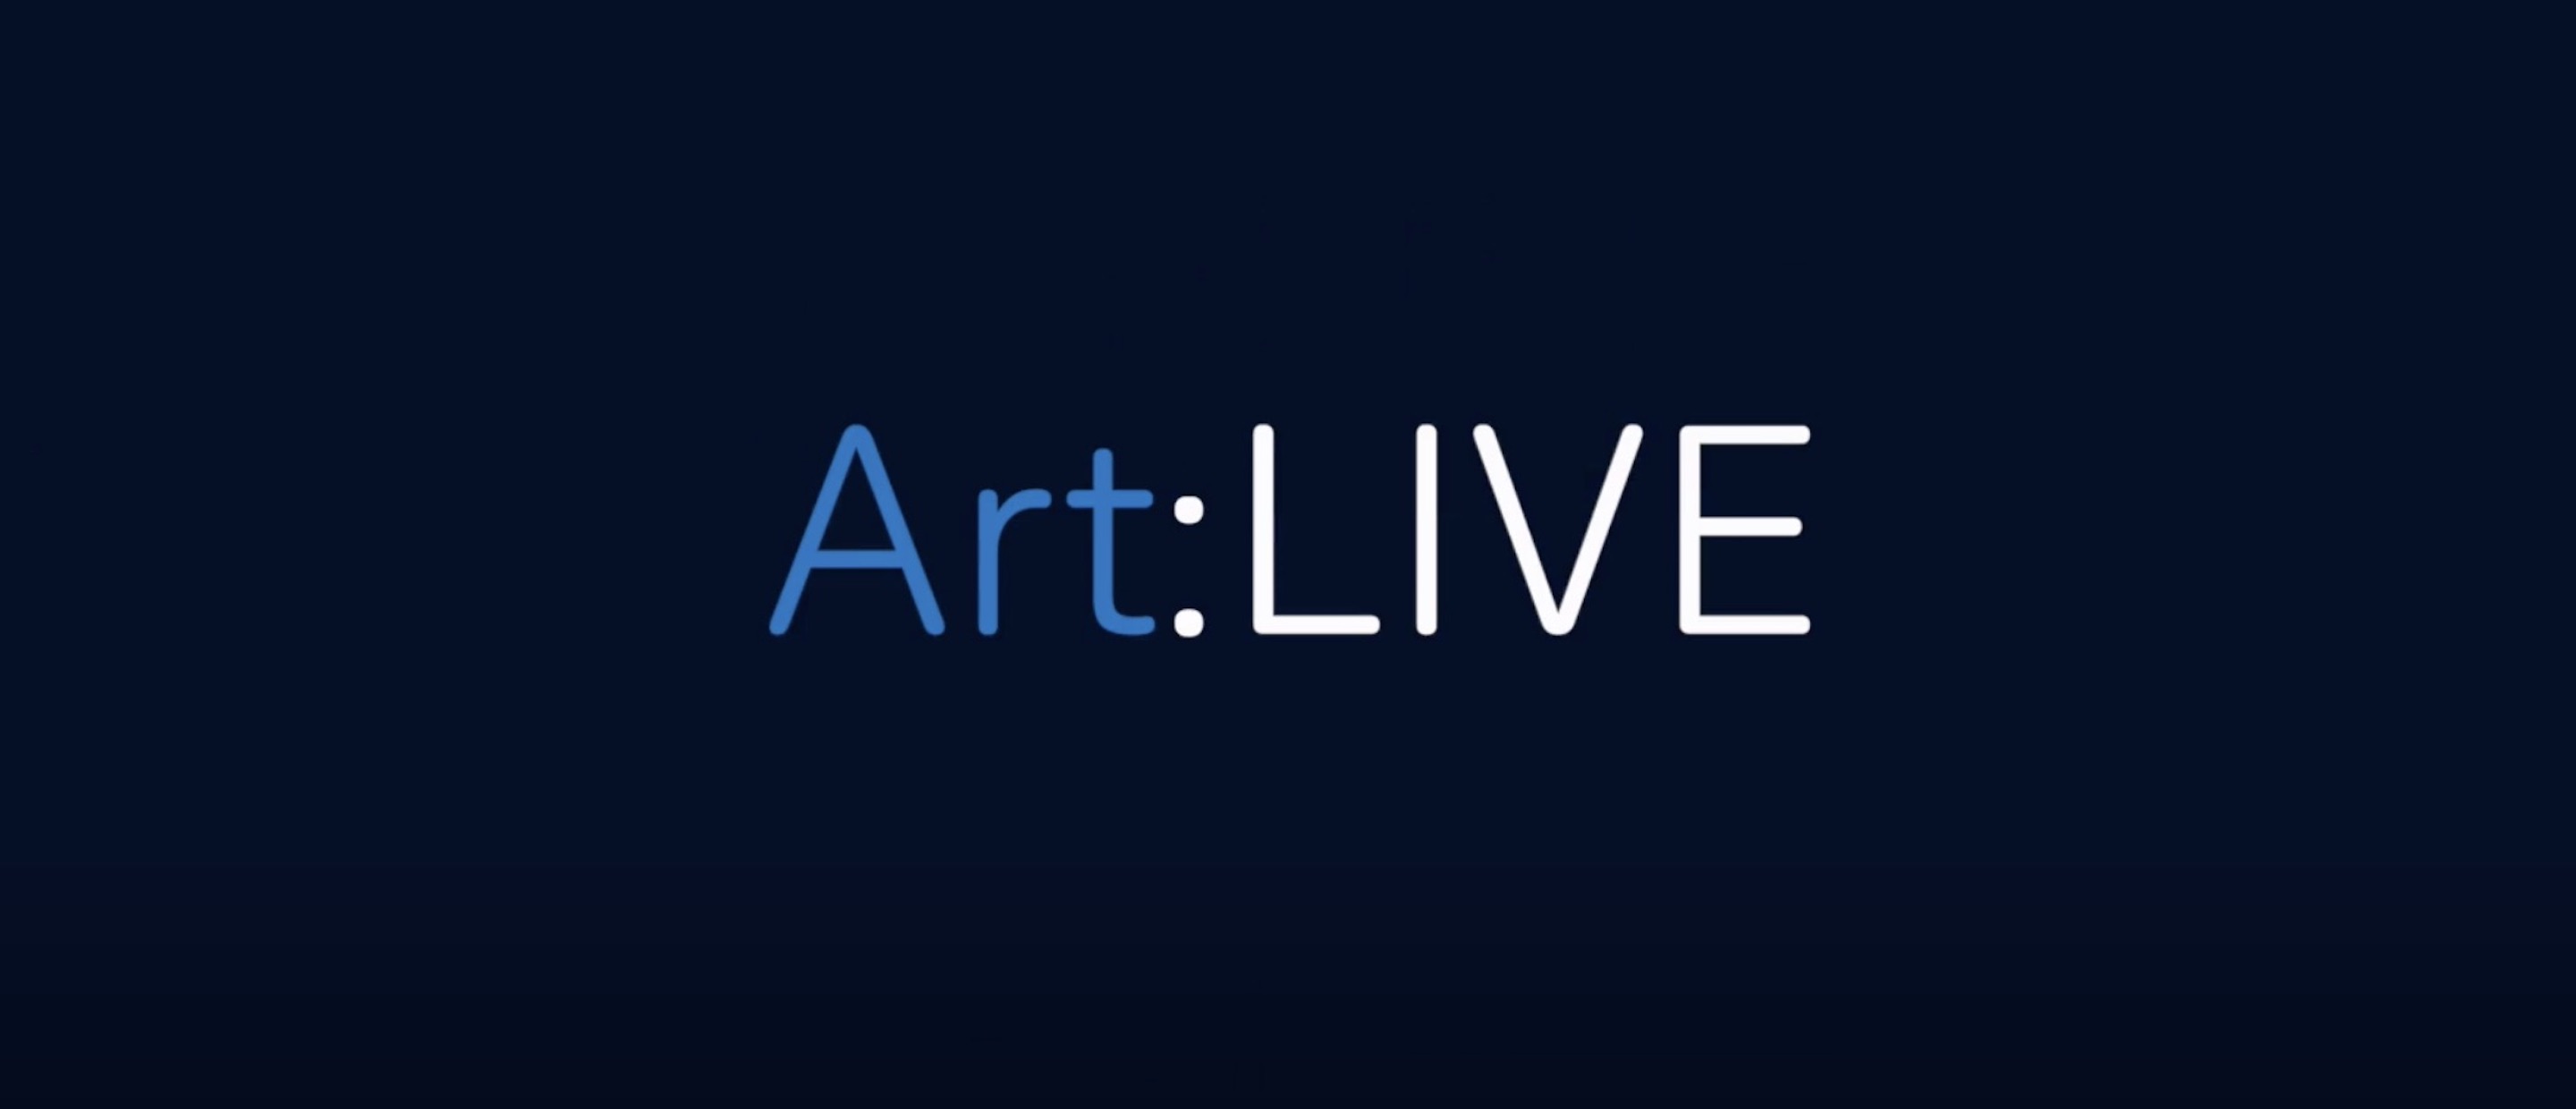 ArtLIVE-logo-2880x1240.jpg